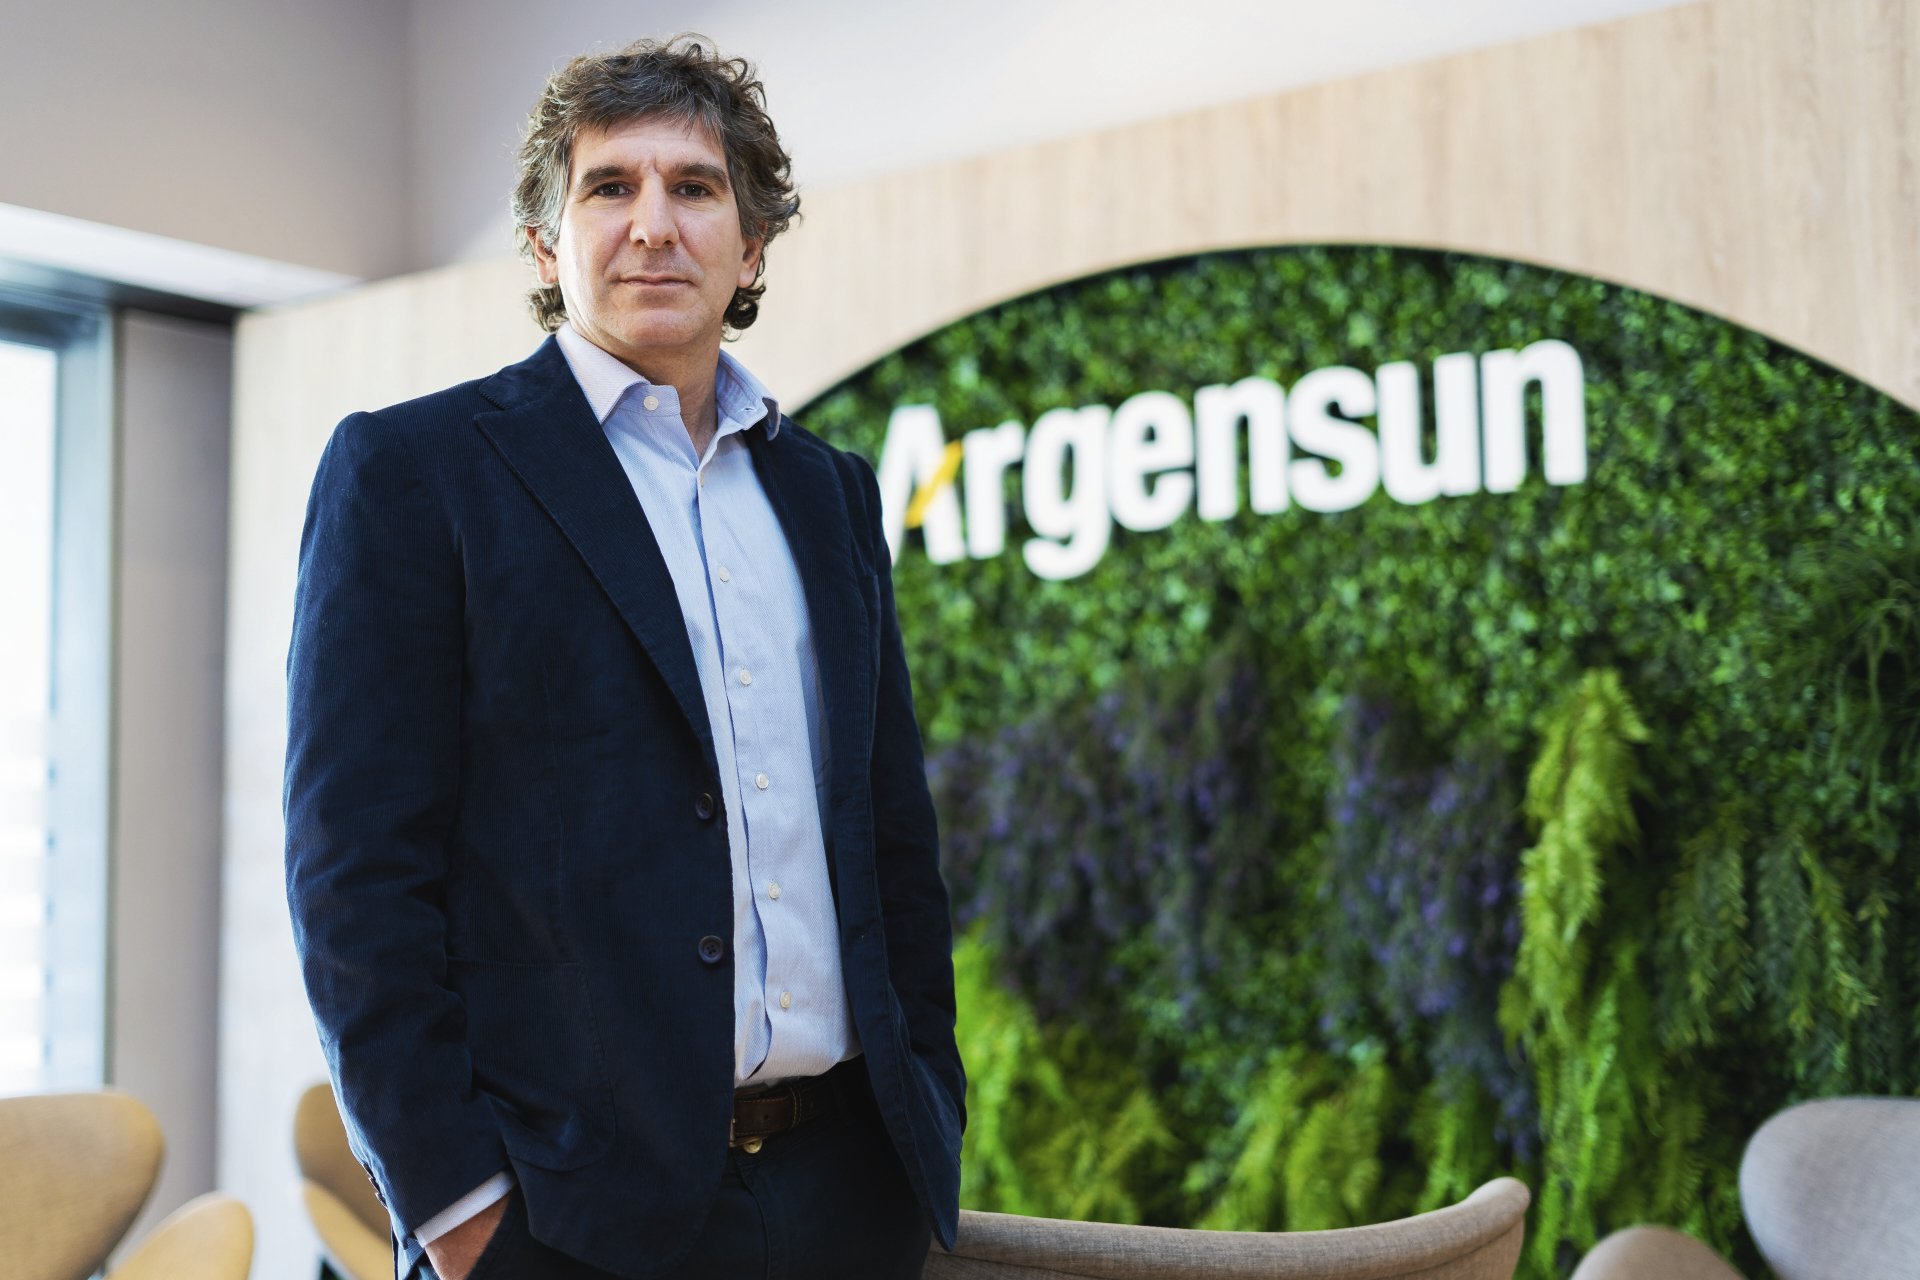 El CEO de Argensun habla del negocio de Pipas, su icónica marca de semillas  de girasol confitero - Forbes Argentina